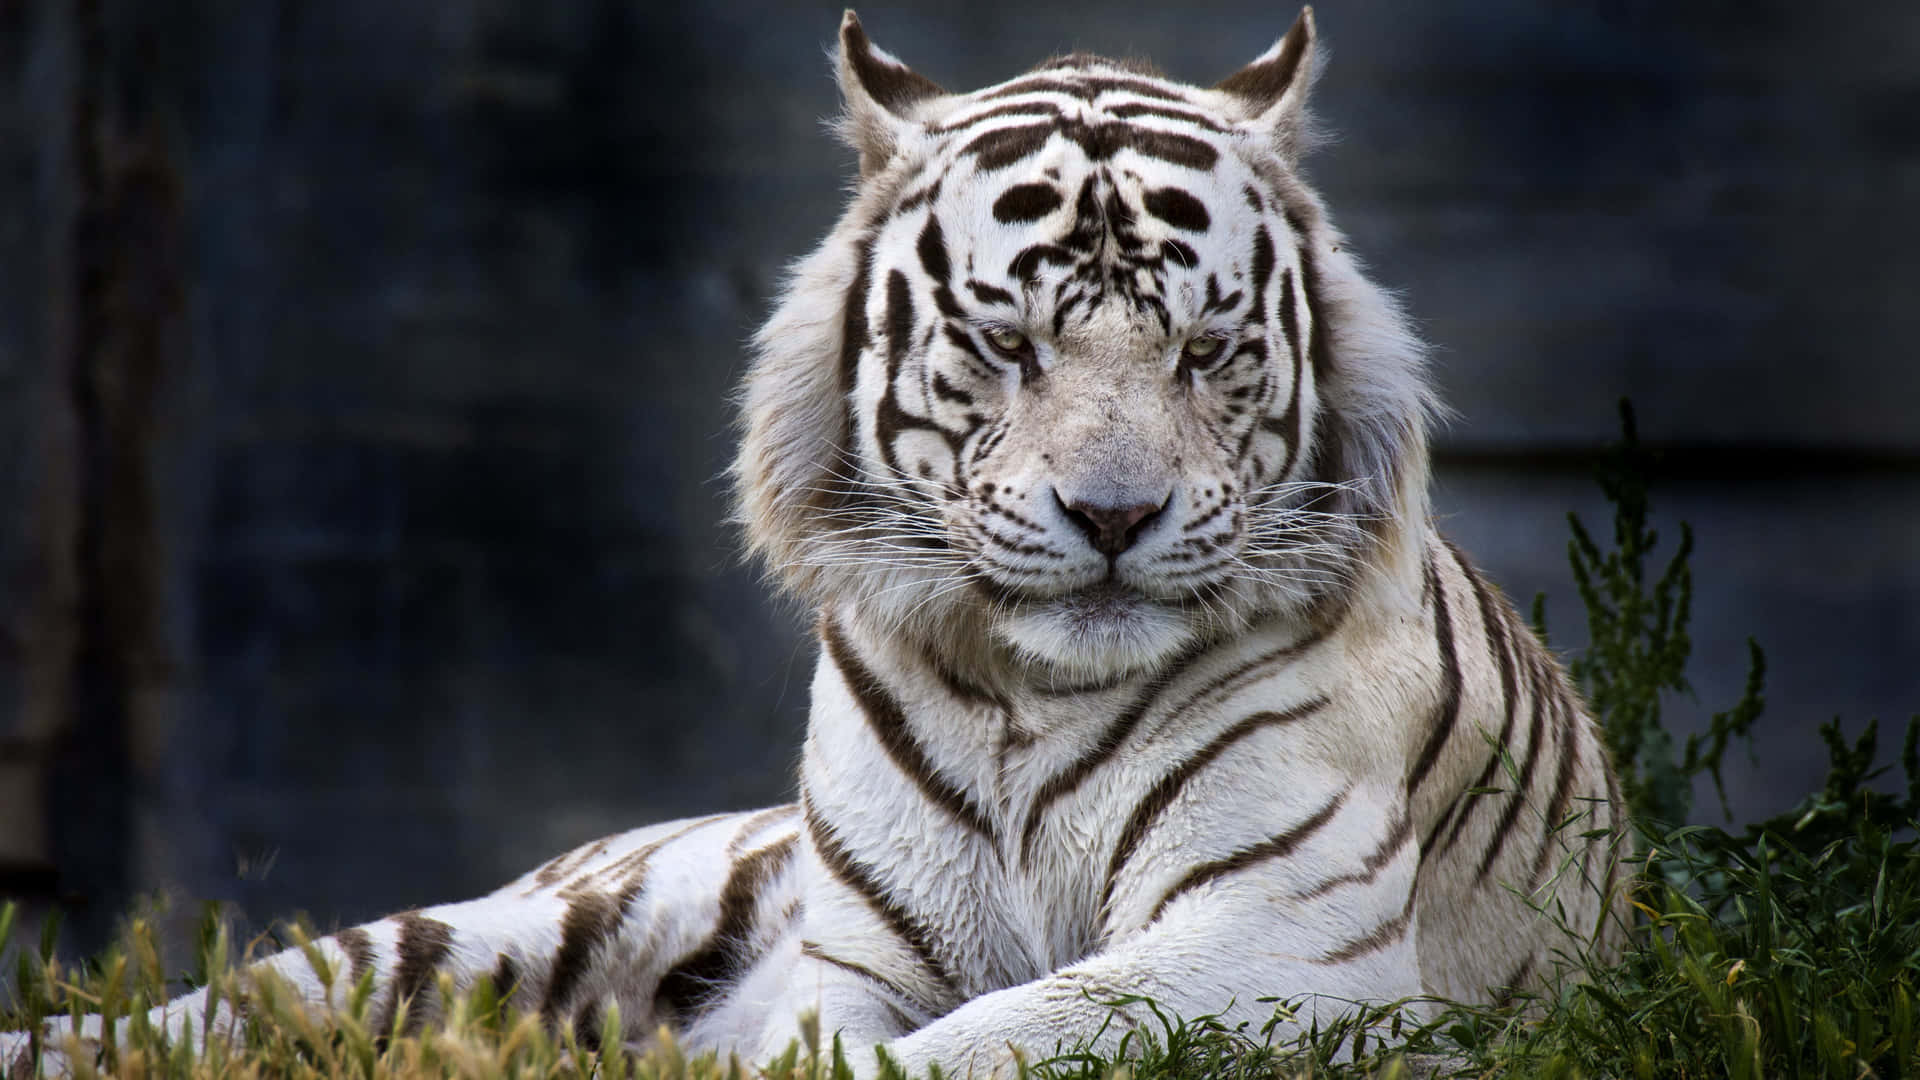 Impressionanteslistras Pretas E Laranjas Deste Tigre Majestoso.